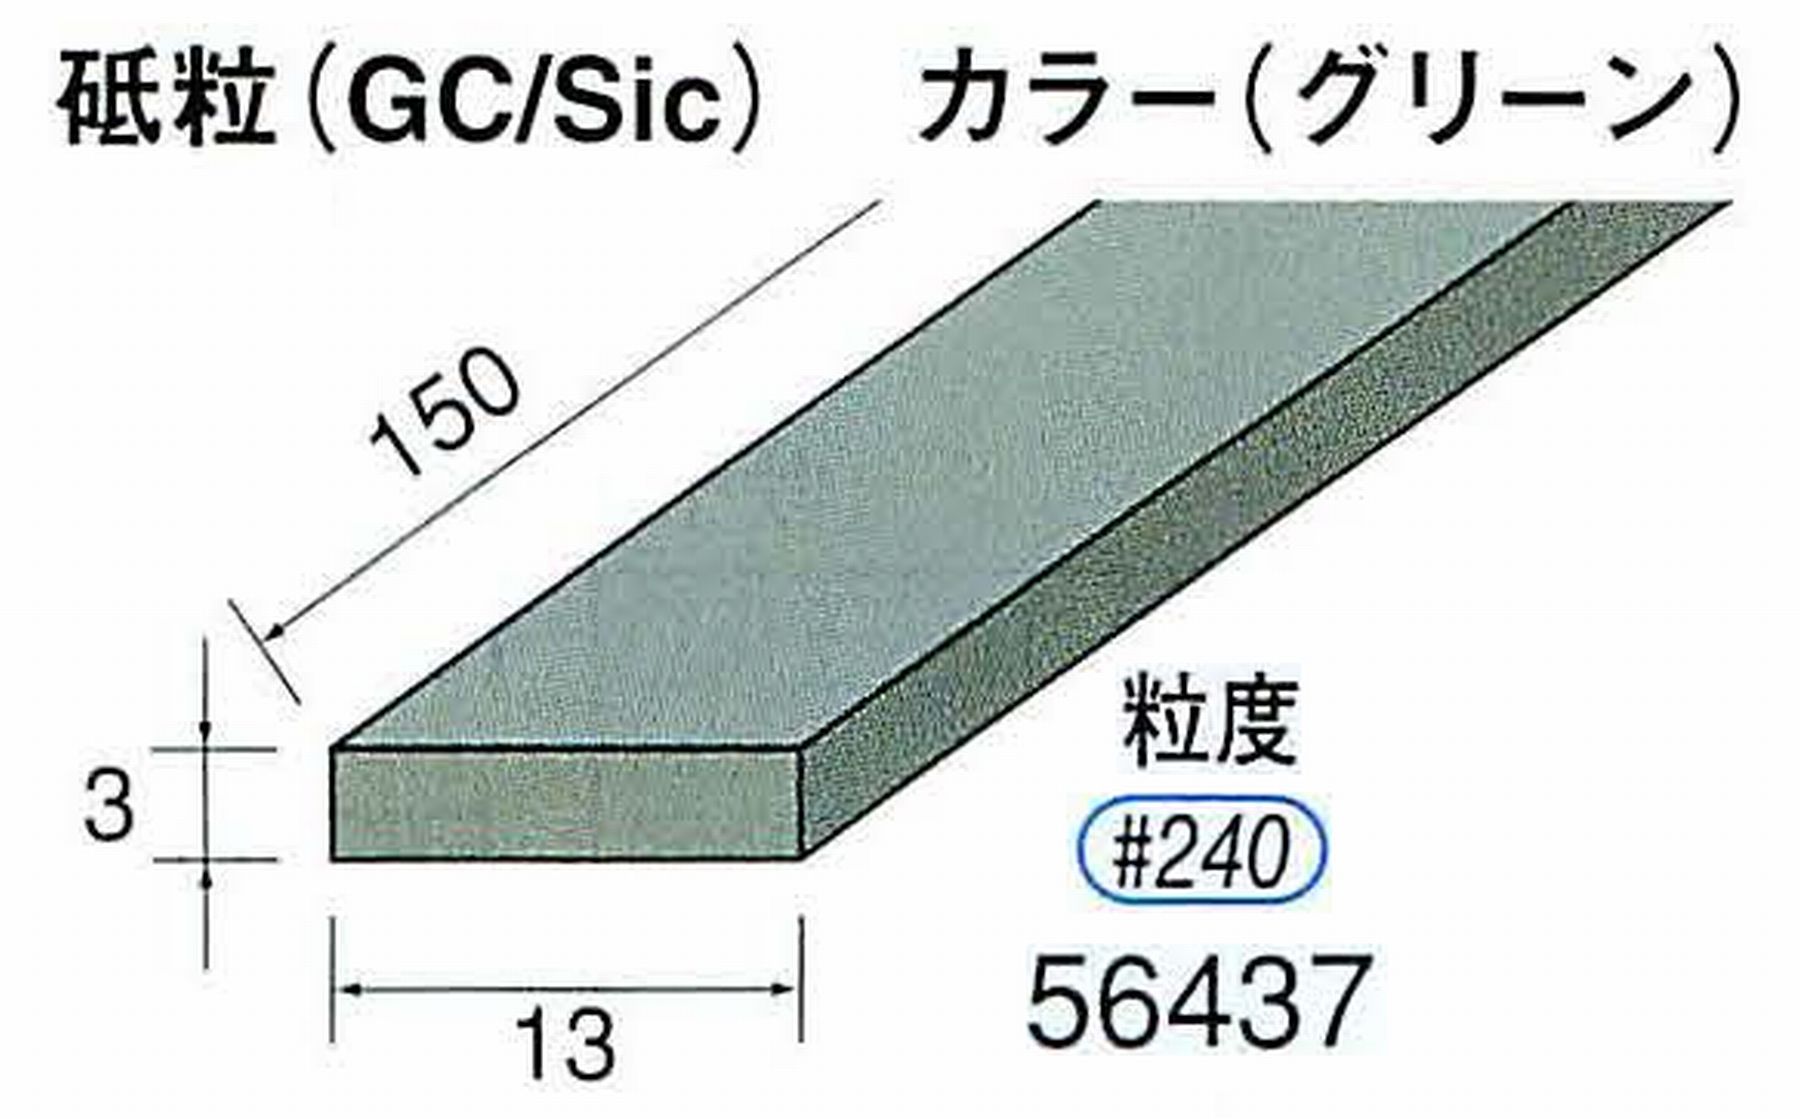 ナカニシ/NAKANISHI スティック砥石 グリーン・フィニッシュシリーズ 砥粒(GC/Sic) 56437